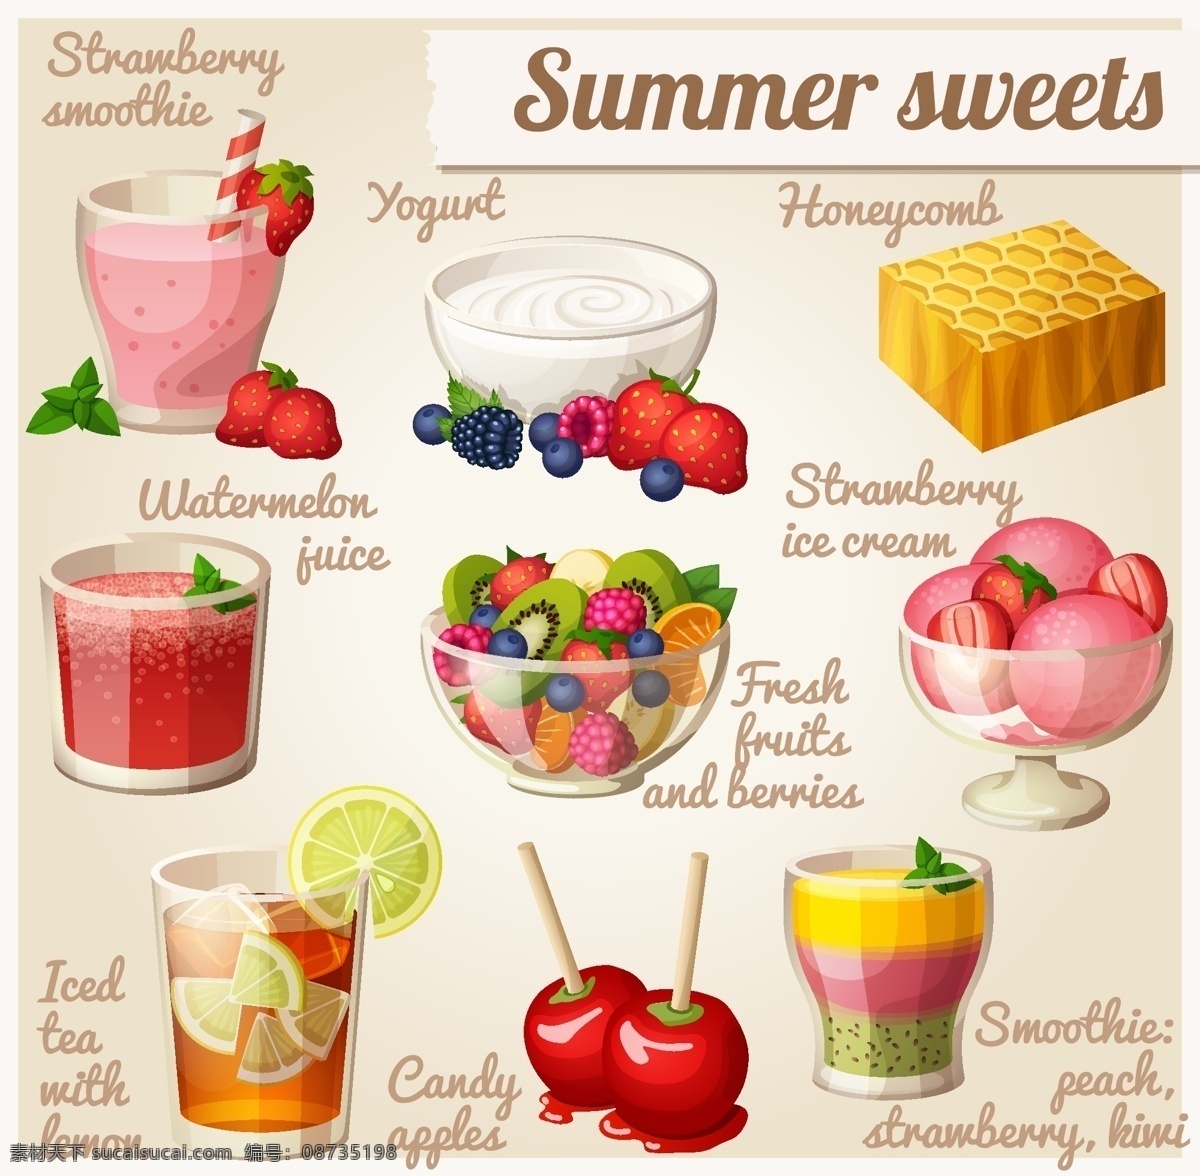 夏日 甜品 矢量 设计素材 夏日甜品 冰淇淋 水果沙拉 果汁 矢量食物 白色